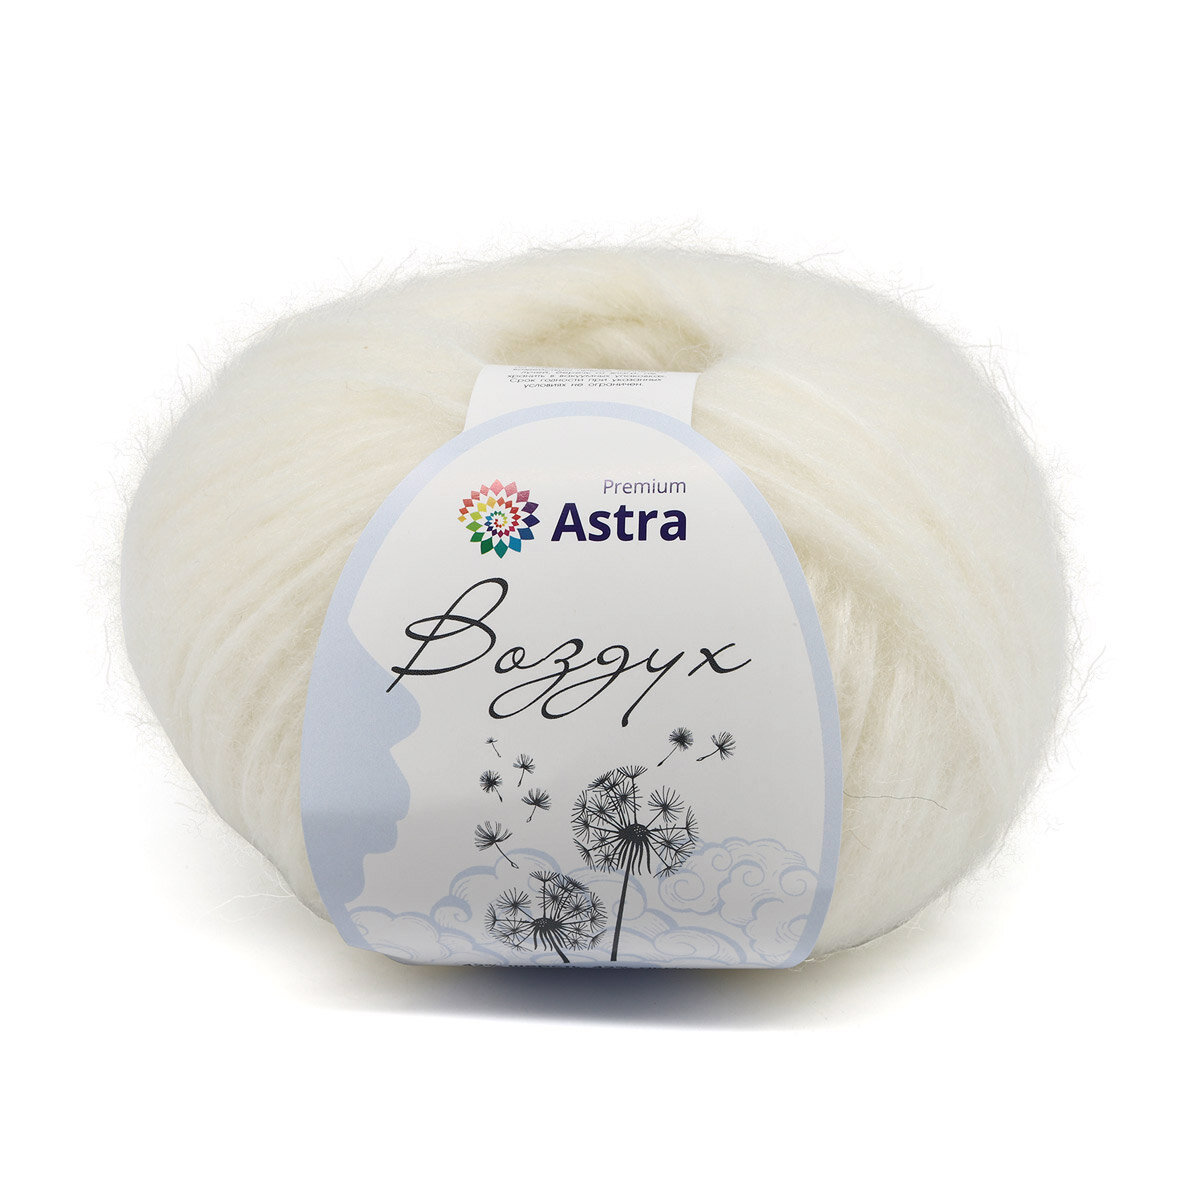 Пряжа для вязания Astra Premium 'Воздух' (Air), 50 г, 140 м (42% шерсть, 42% акрил, 16% полиэстер) (03 белый), 3 мотка